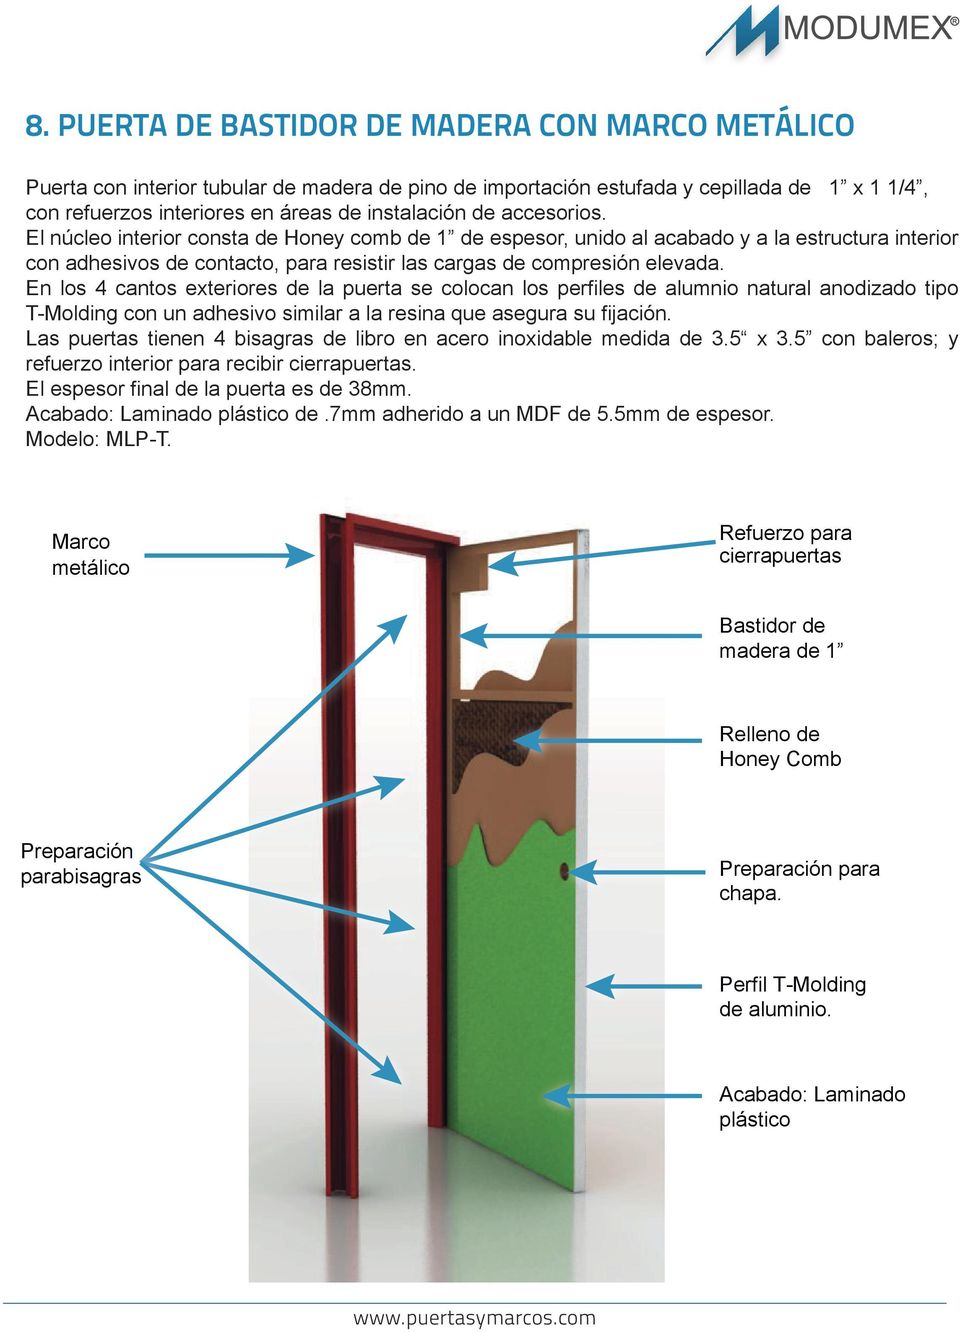 En los 4 cantos exteriores de la puerta se colocan los perfiles de alumnio natural anodizado tipo T-Molding con un adhesivo similar a la resina que asegura su fijación.